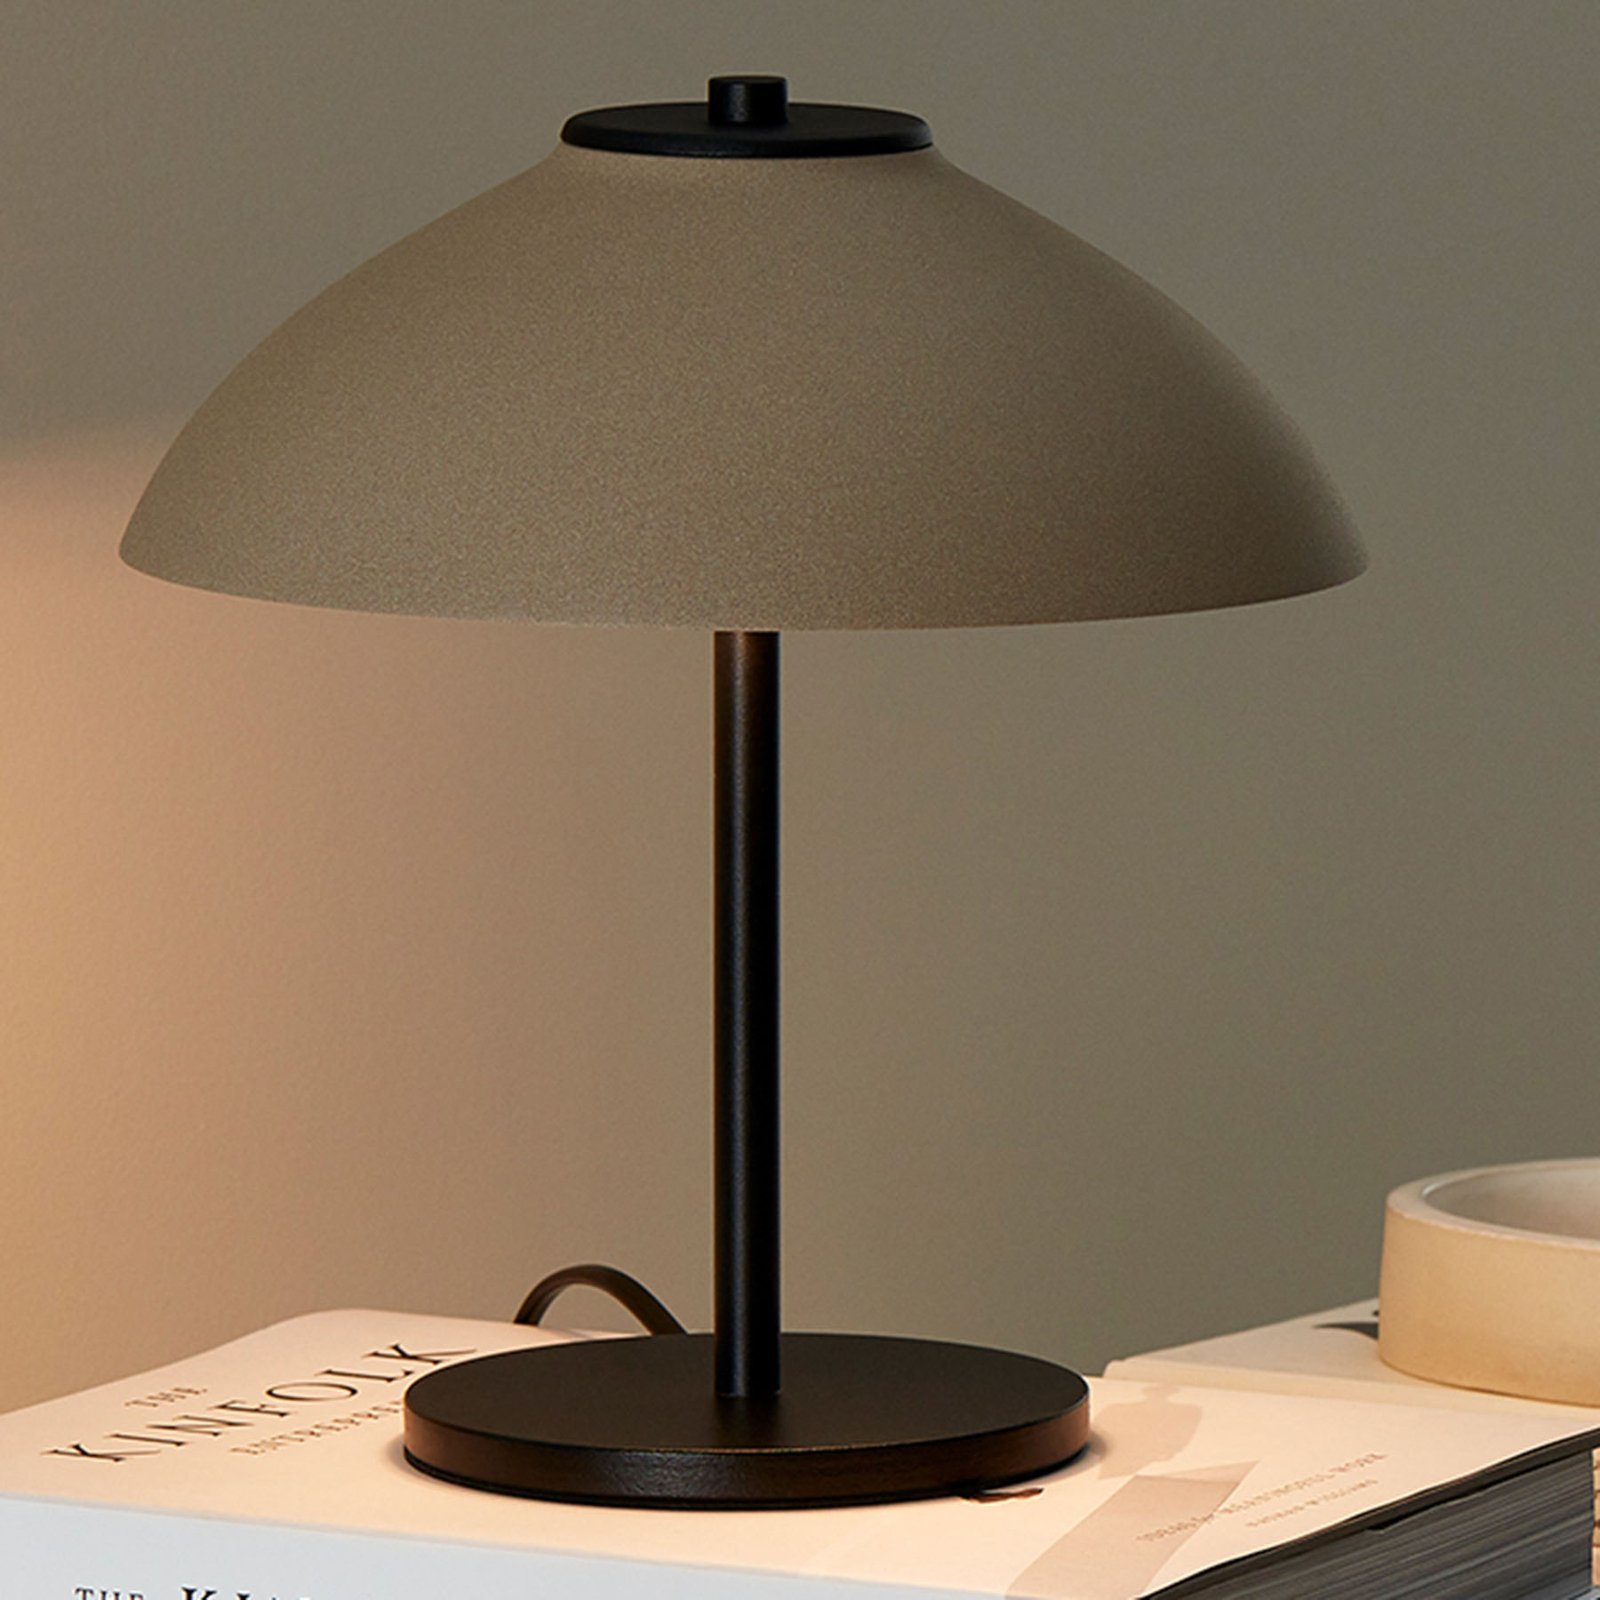 Bordlampe Vali, høyde 25,8 cm, svart/beige